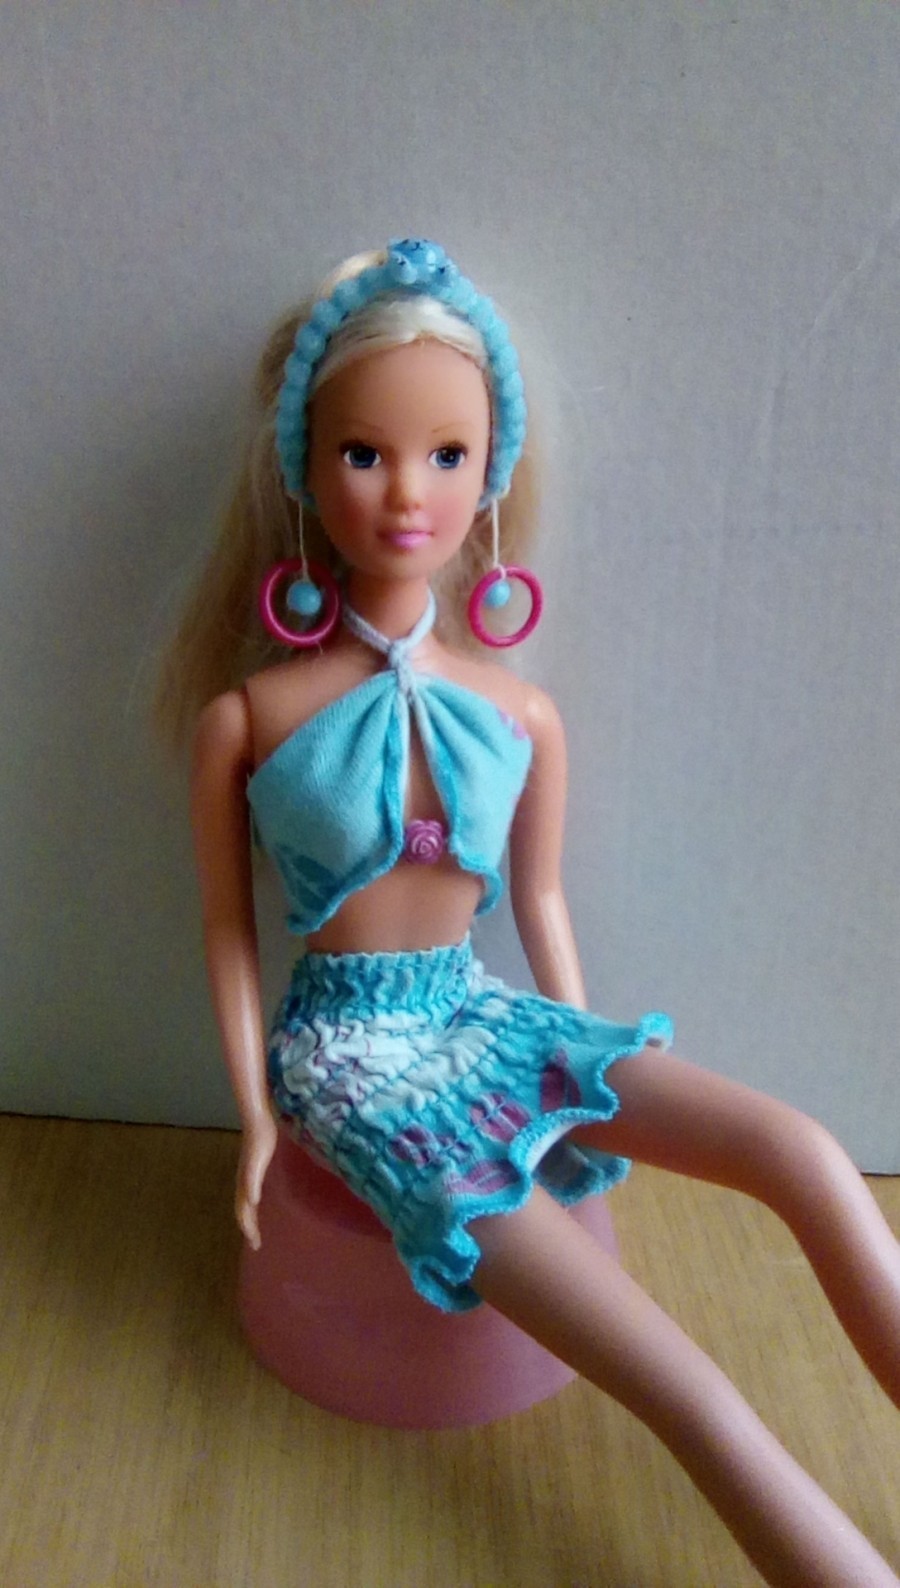 Es ist nicht schwer, Ohrringe für die Barbie Puppe herzustellen. Möchtest du wissen, wie es gemacht wird?